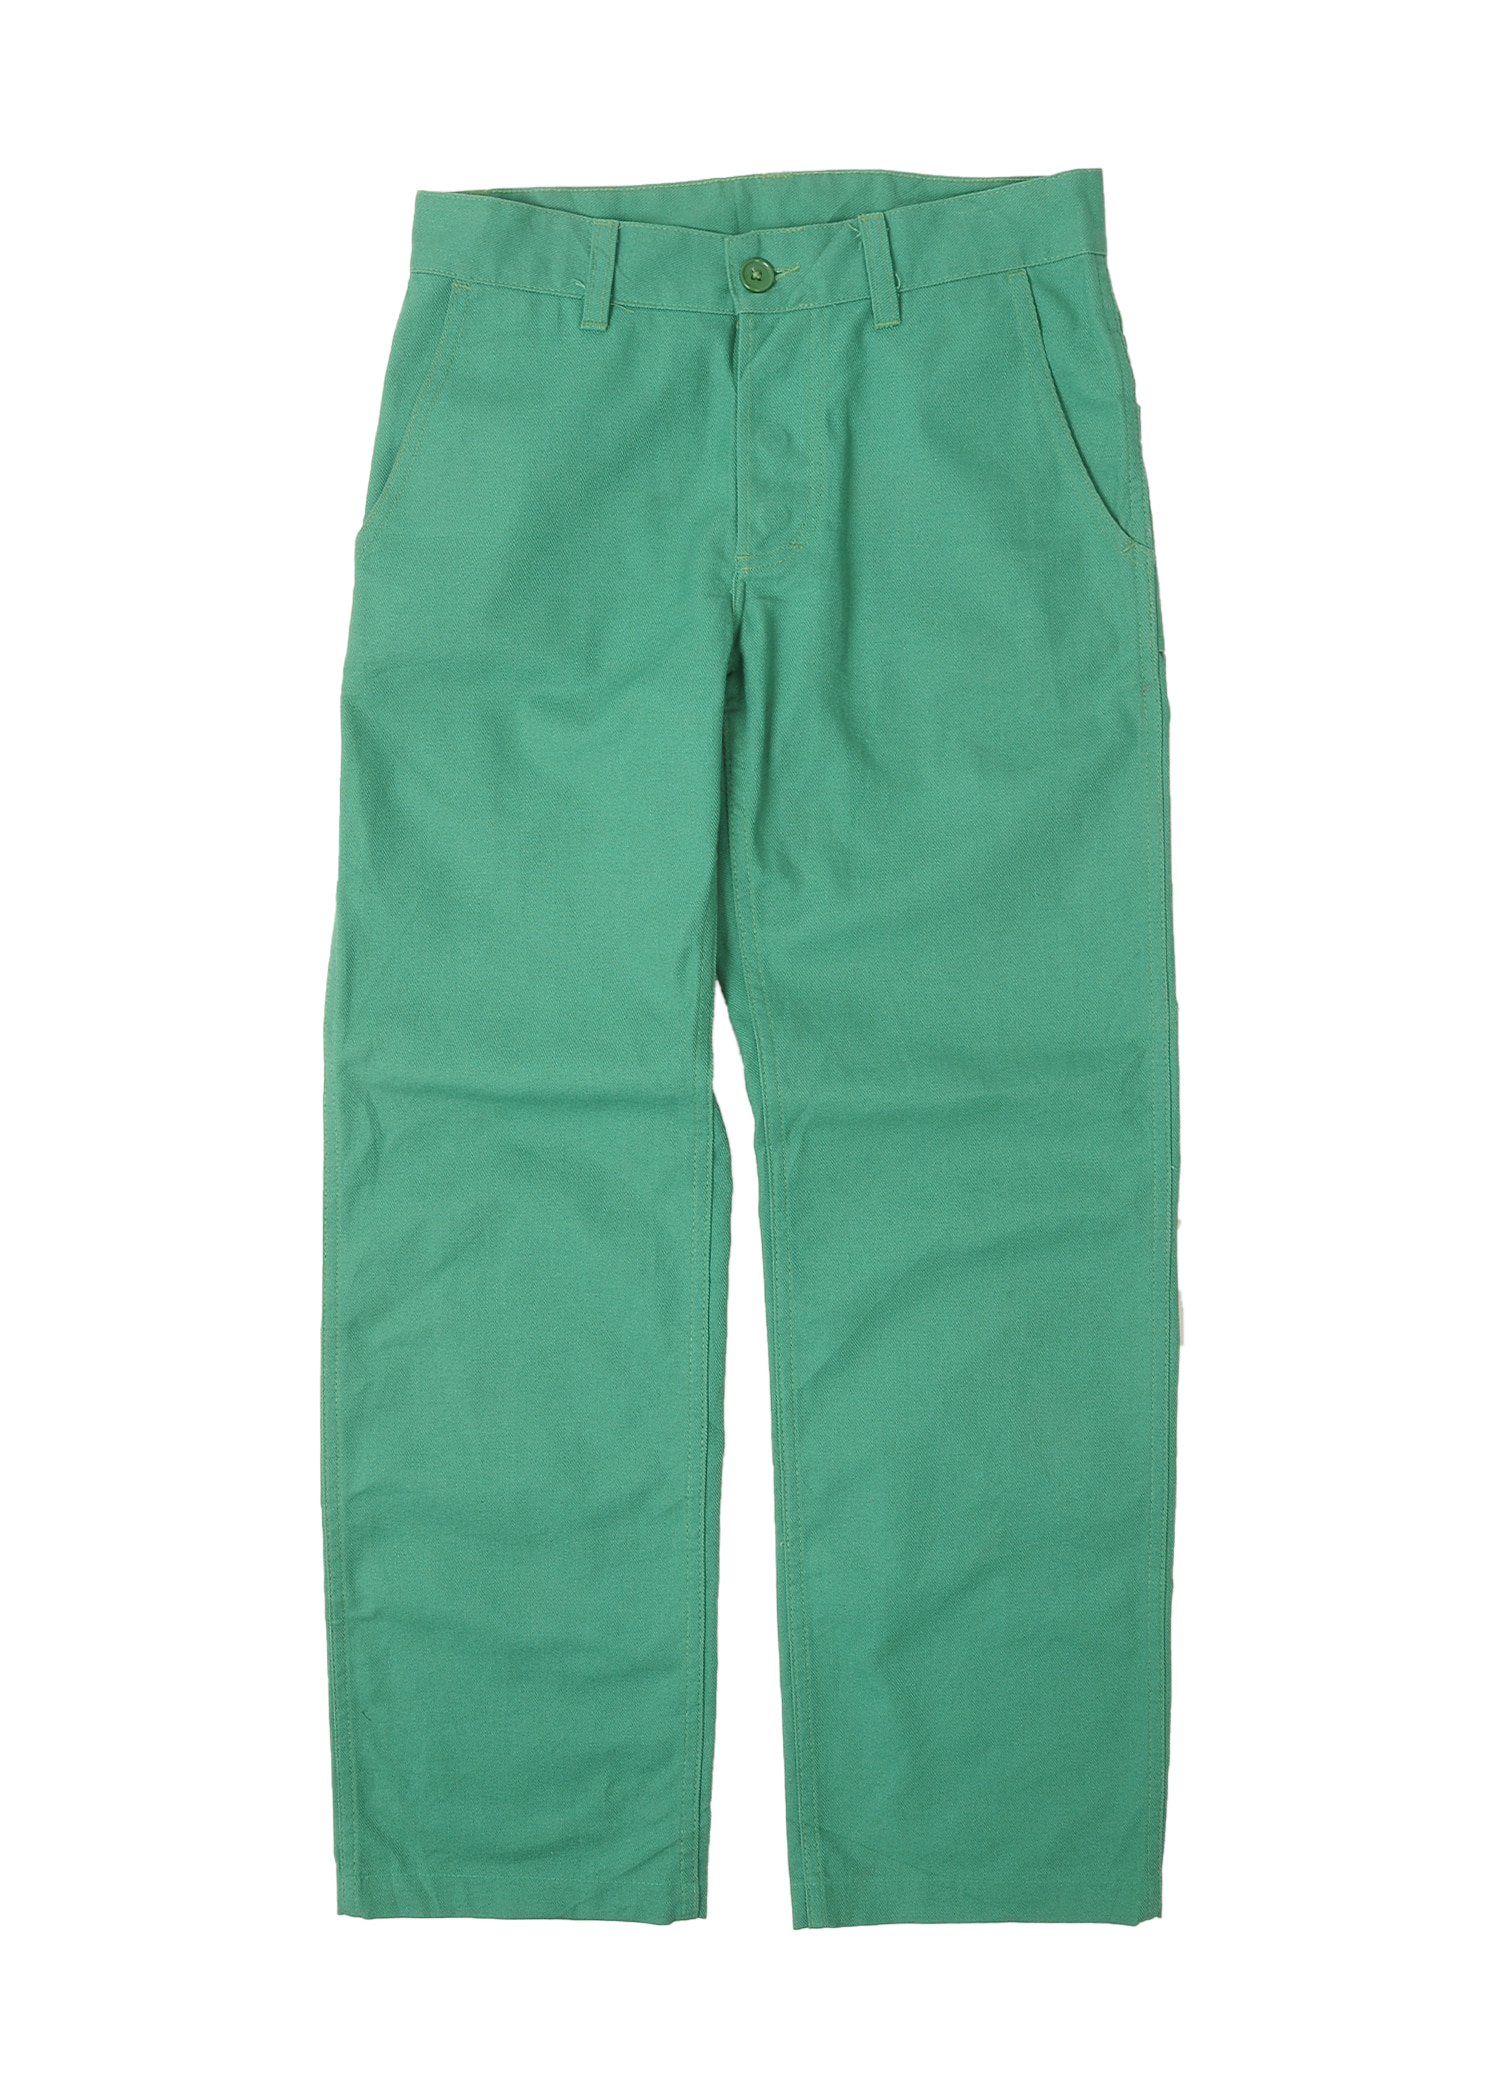 DANTON green pants